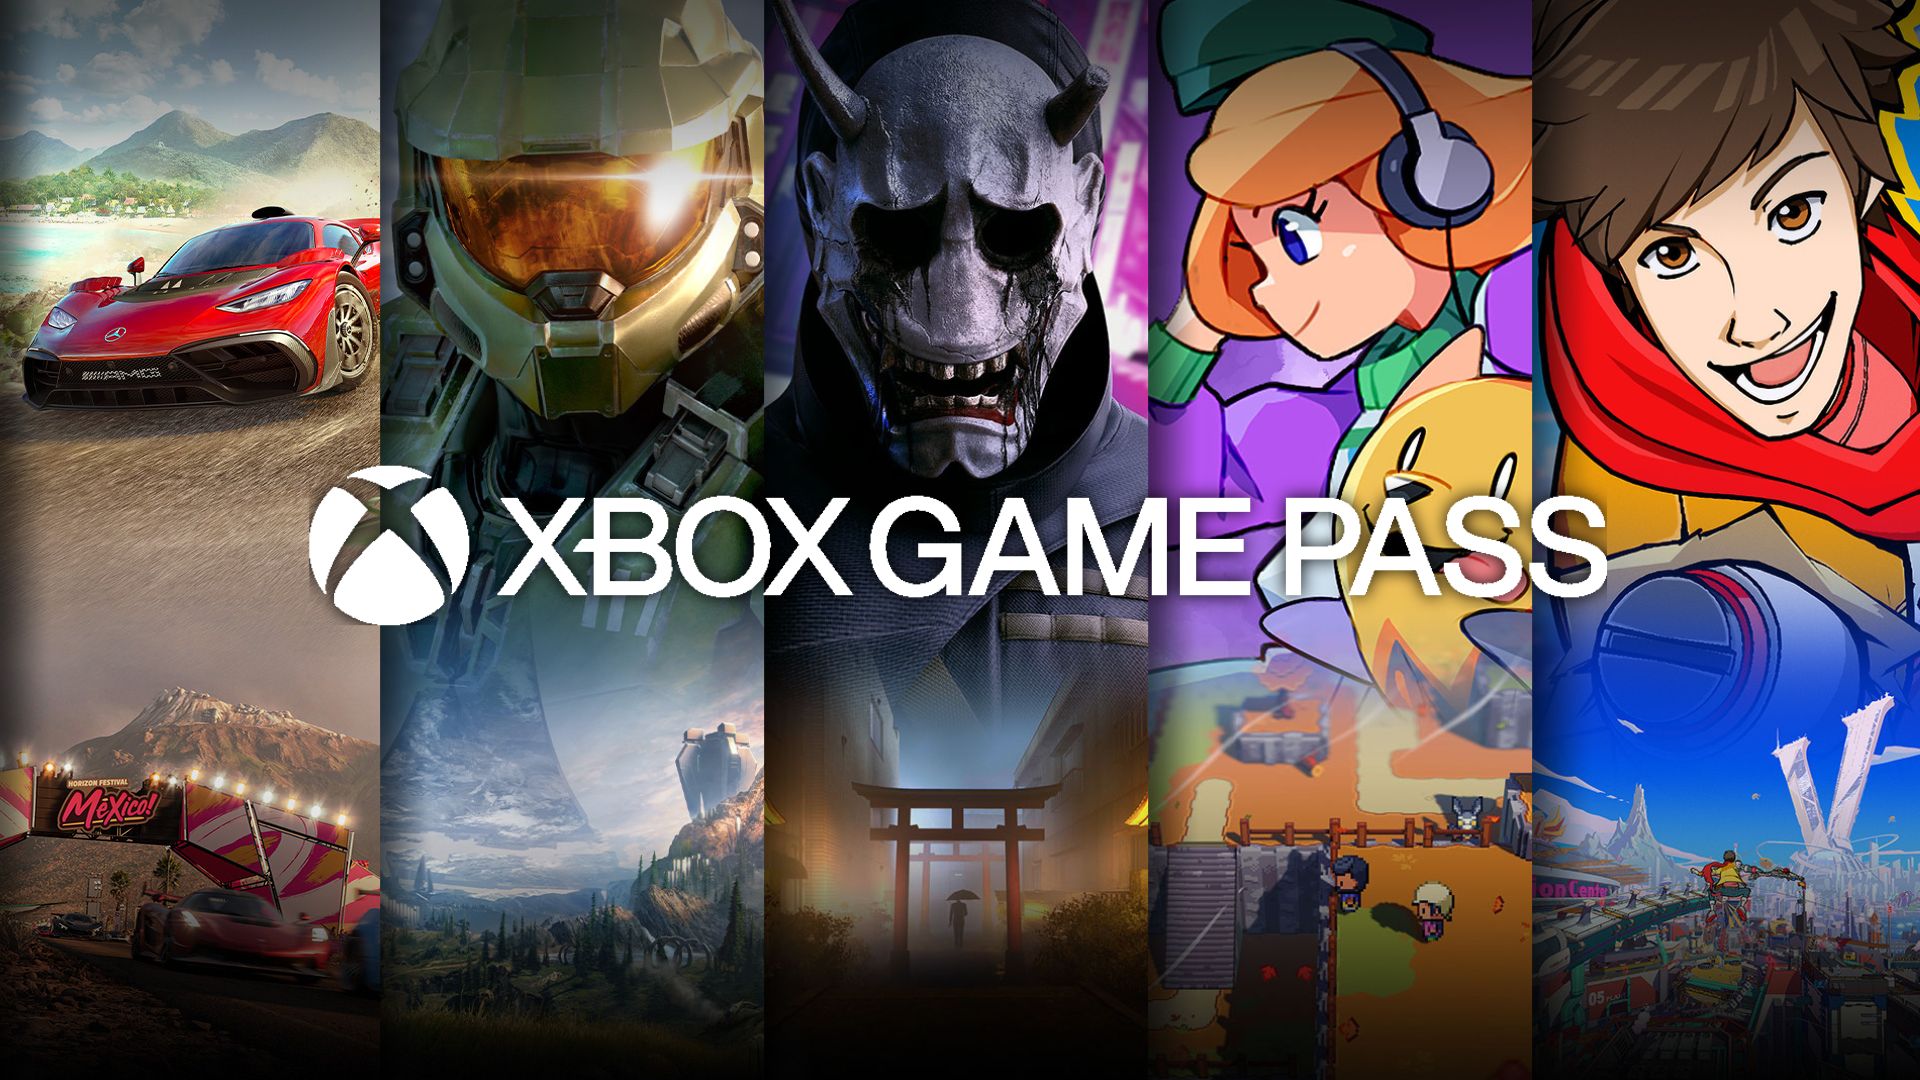 Xbox Game Pass : Selon Jim Ryan, le Game Pass n'encourage pas la production de jeux de qualité